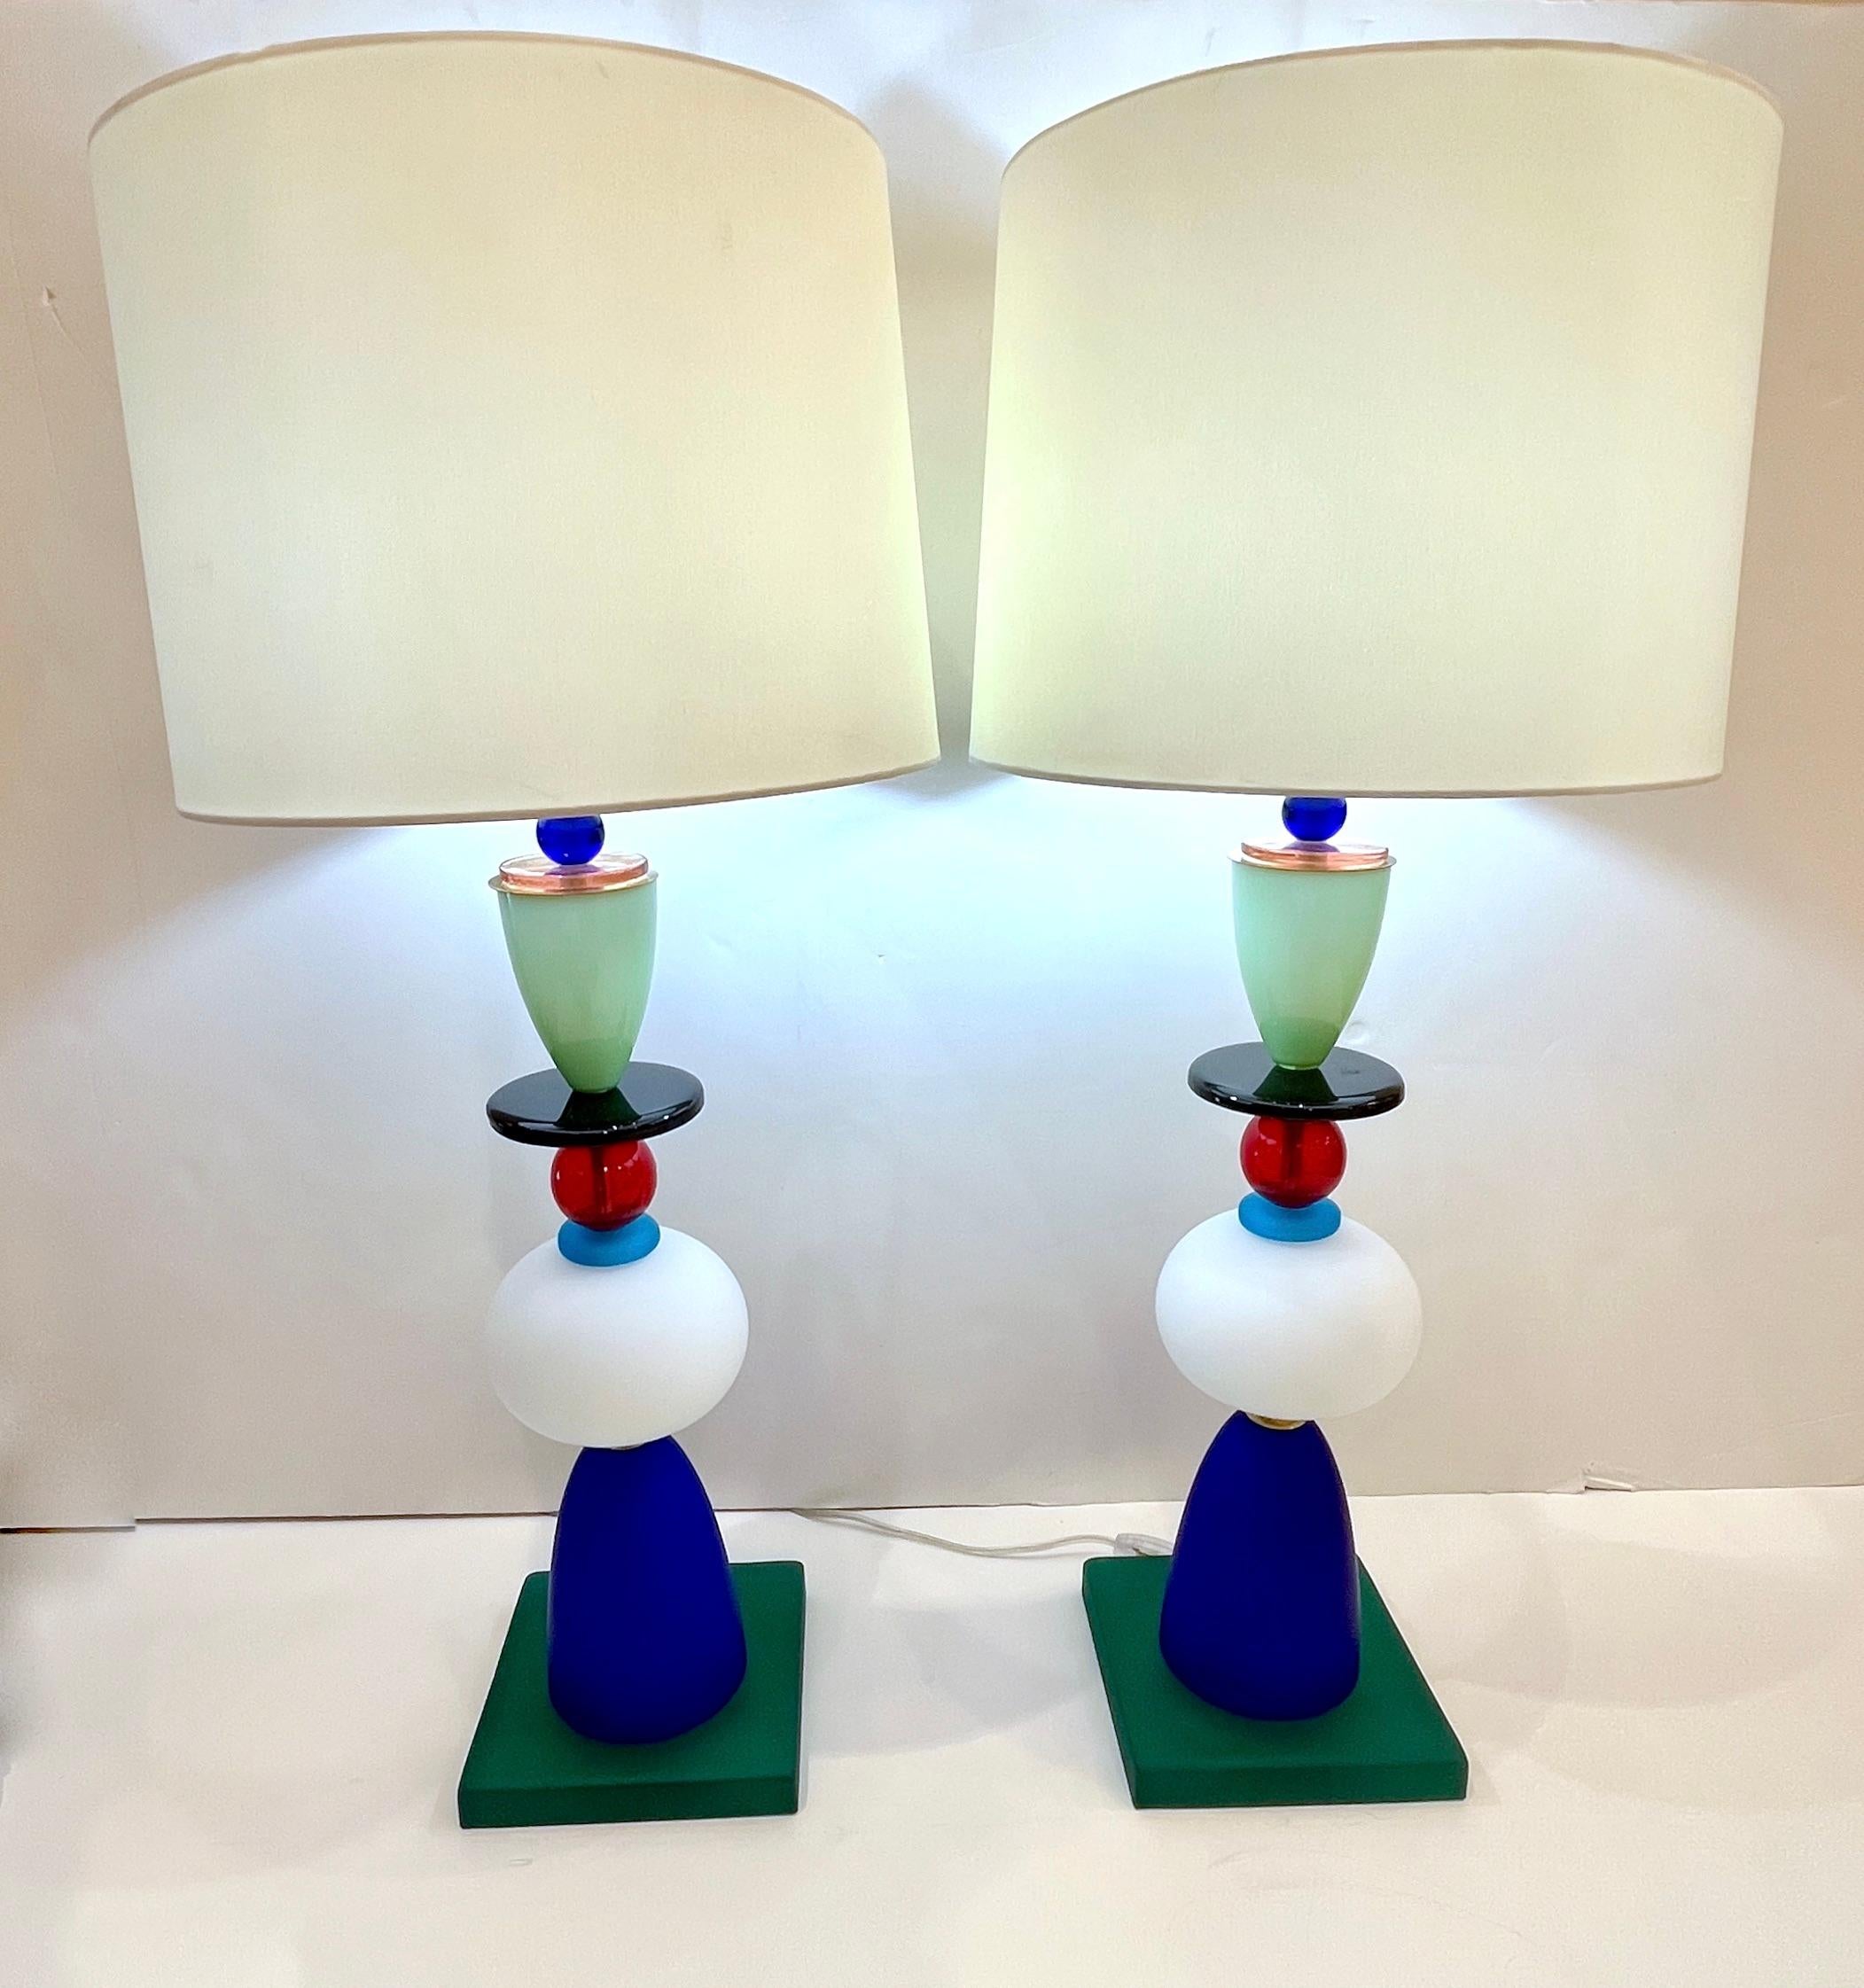 Une paire unique de lampes italiennes en verre de Murano coloré des années 1980 dans le style d'Ettore Sottsass pour Memphis. Construite avec des étages de verre soufflé de Murano aux couleurs vives et géométriques, chaque couche étant